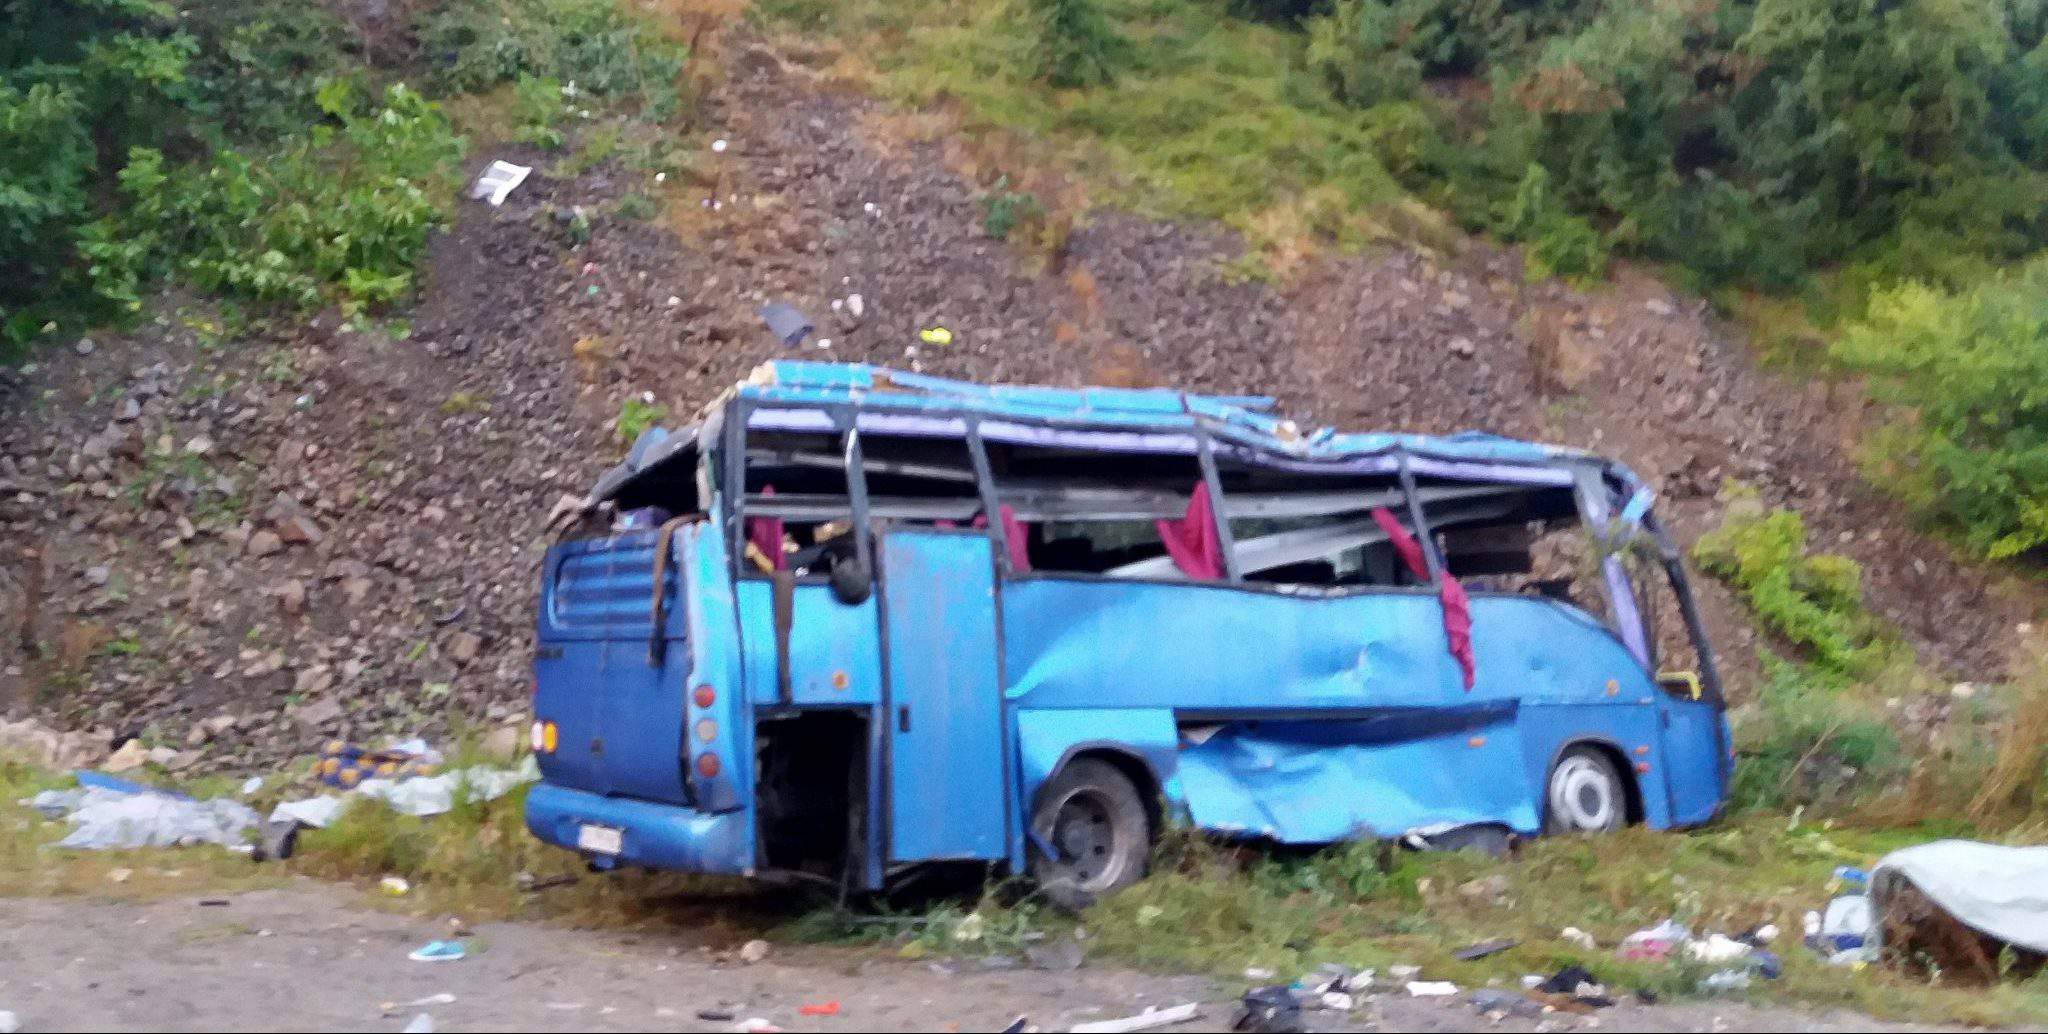 Bulgaria bus crash